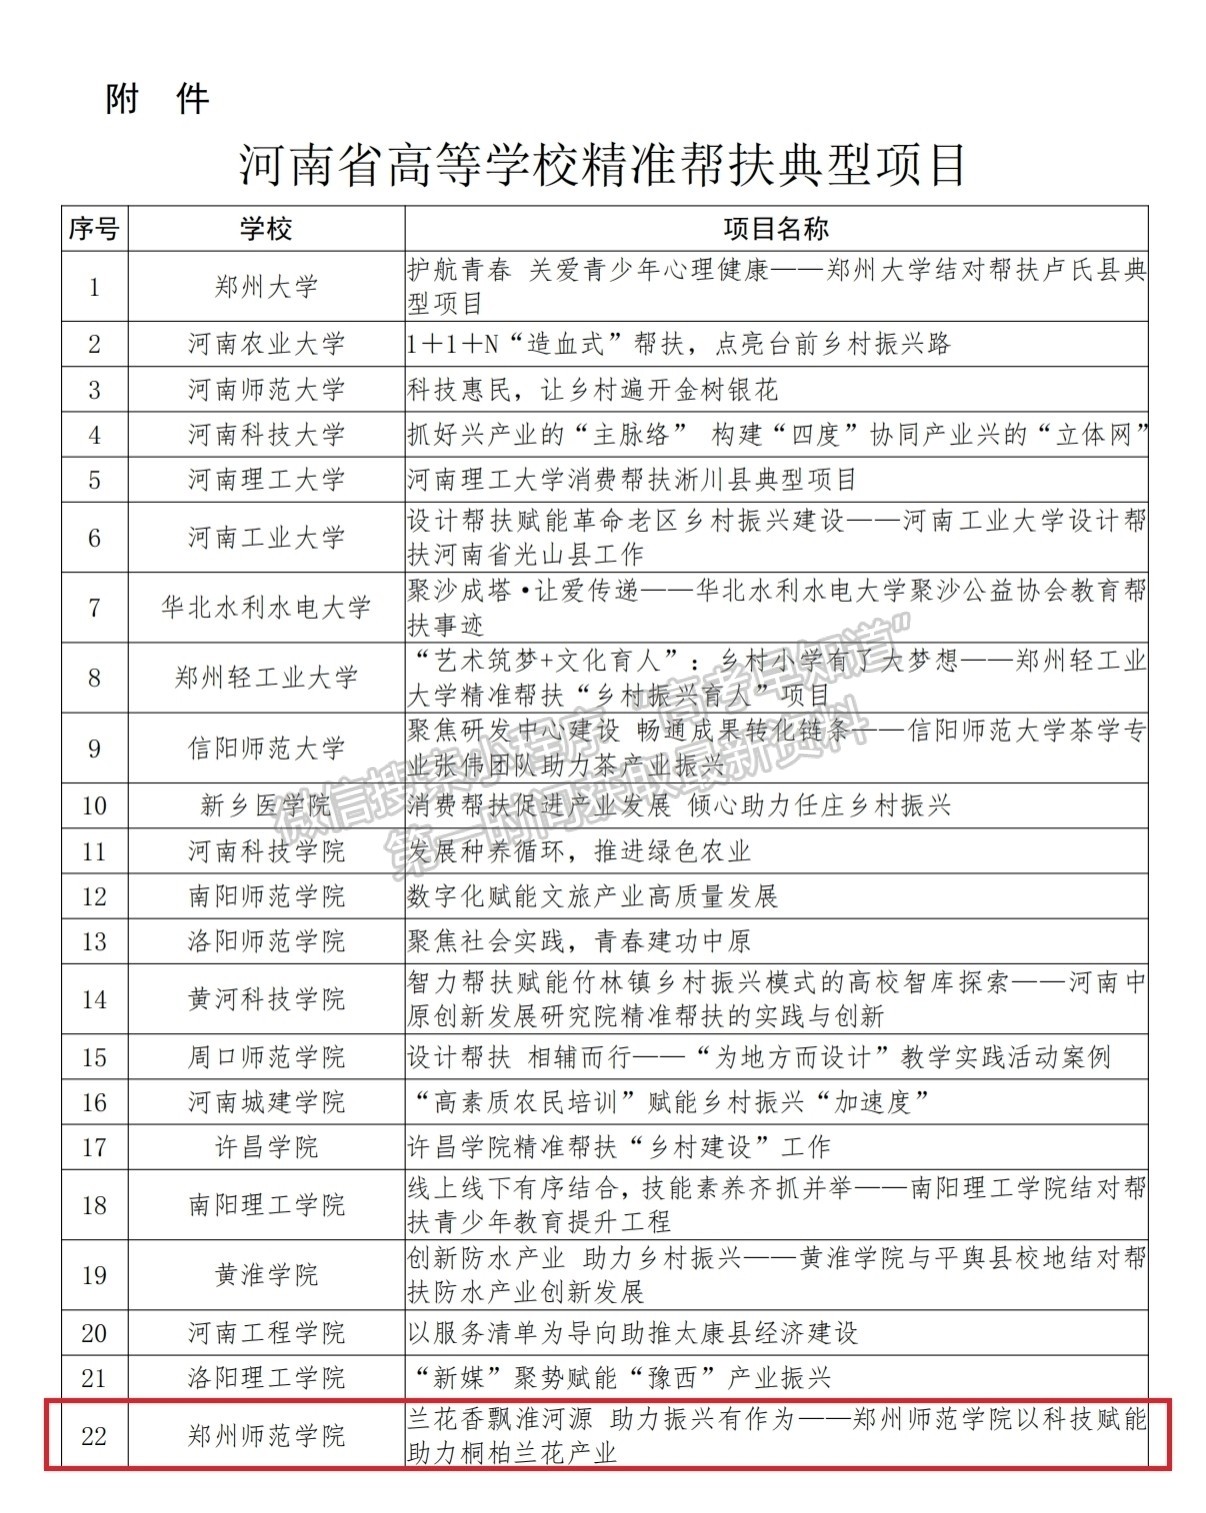 郑州师范学院获评河南省高等学校精准帮扶典型项目